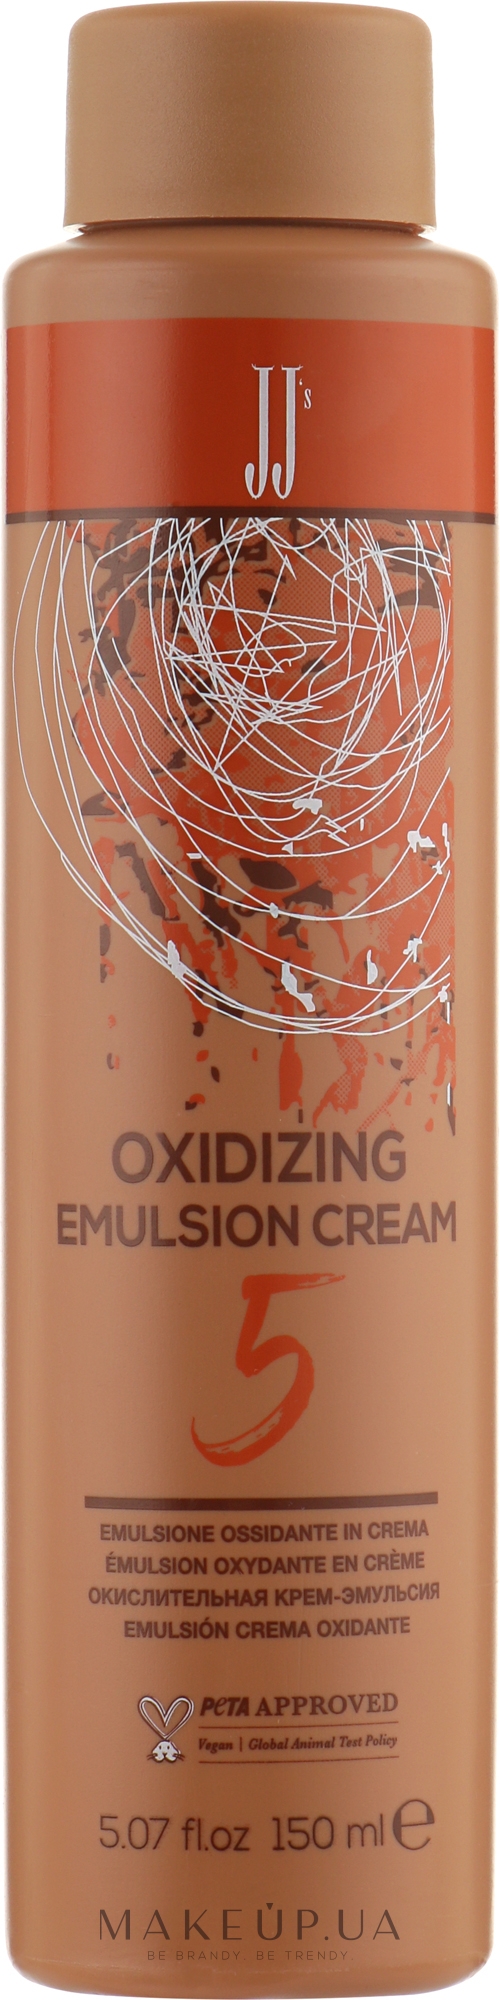 Окислительная крем-эмульсия 5VOL 1.5% - JJ's Oxidizing Emulsion Cream — фото 150ml